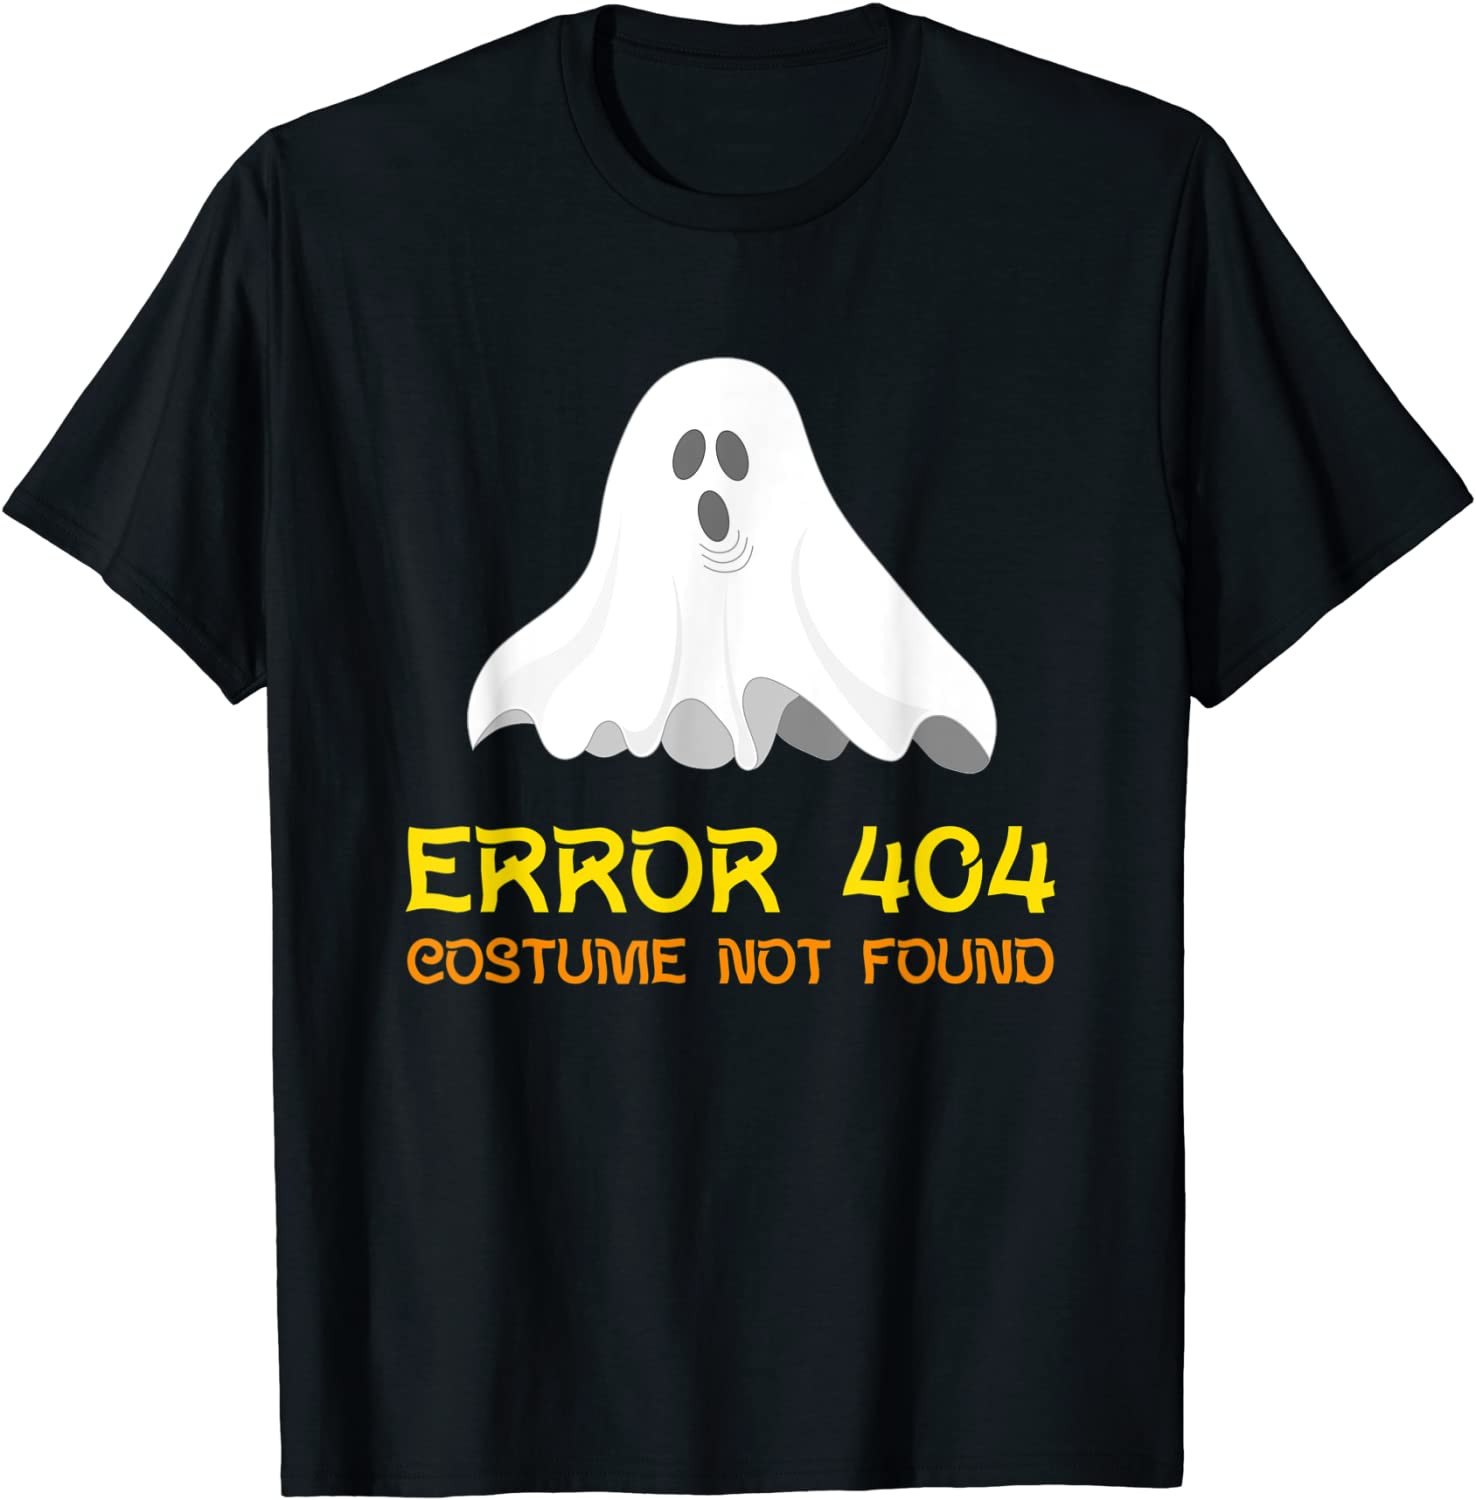 Halloween  T-Shirt